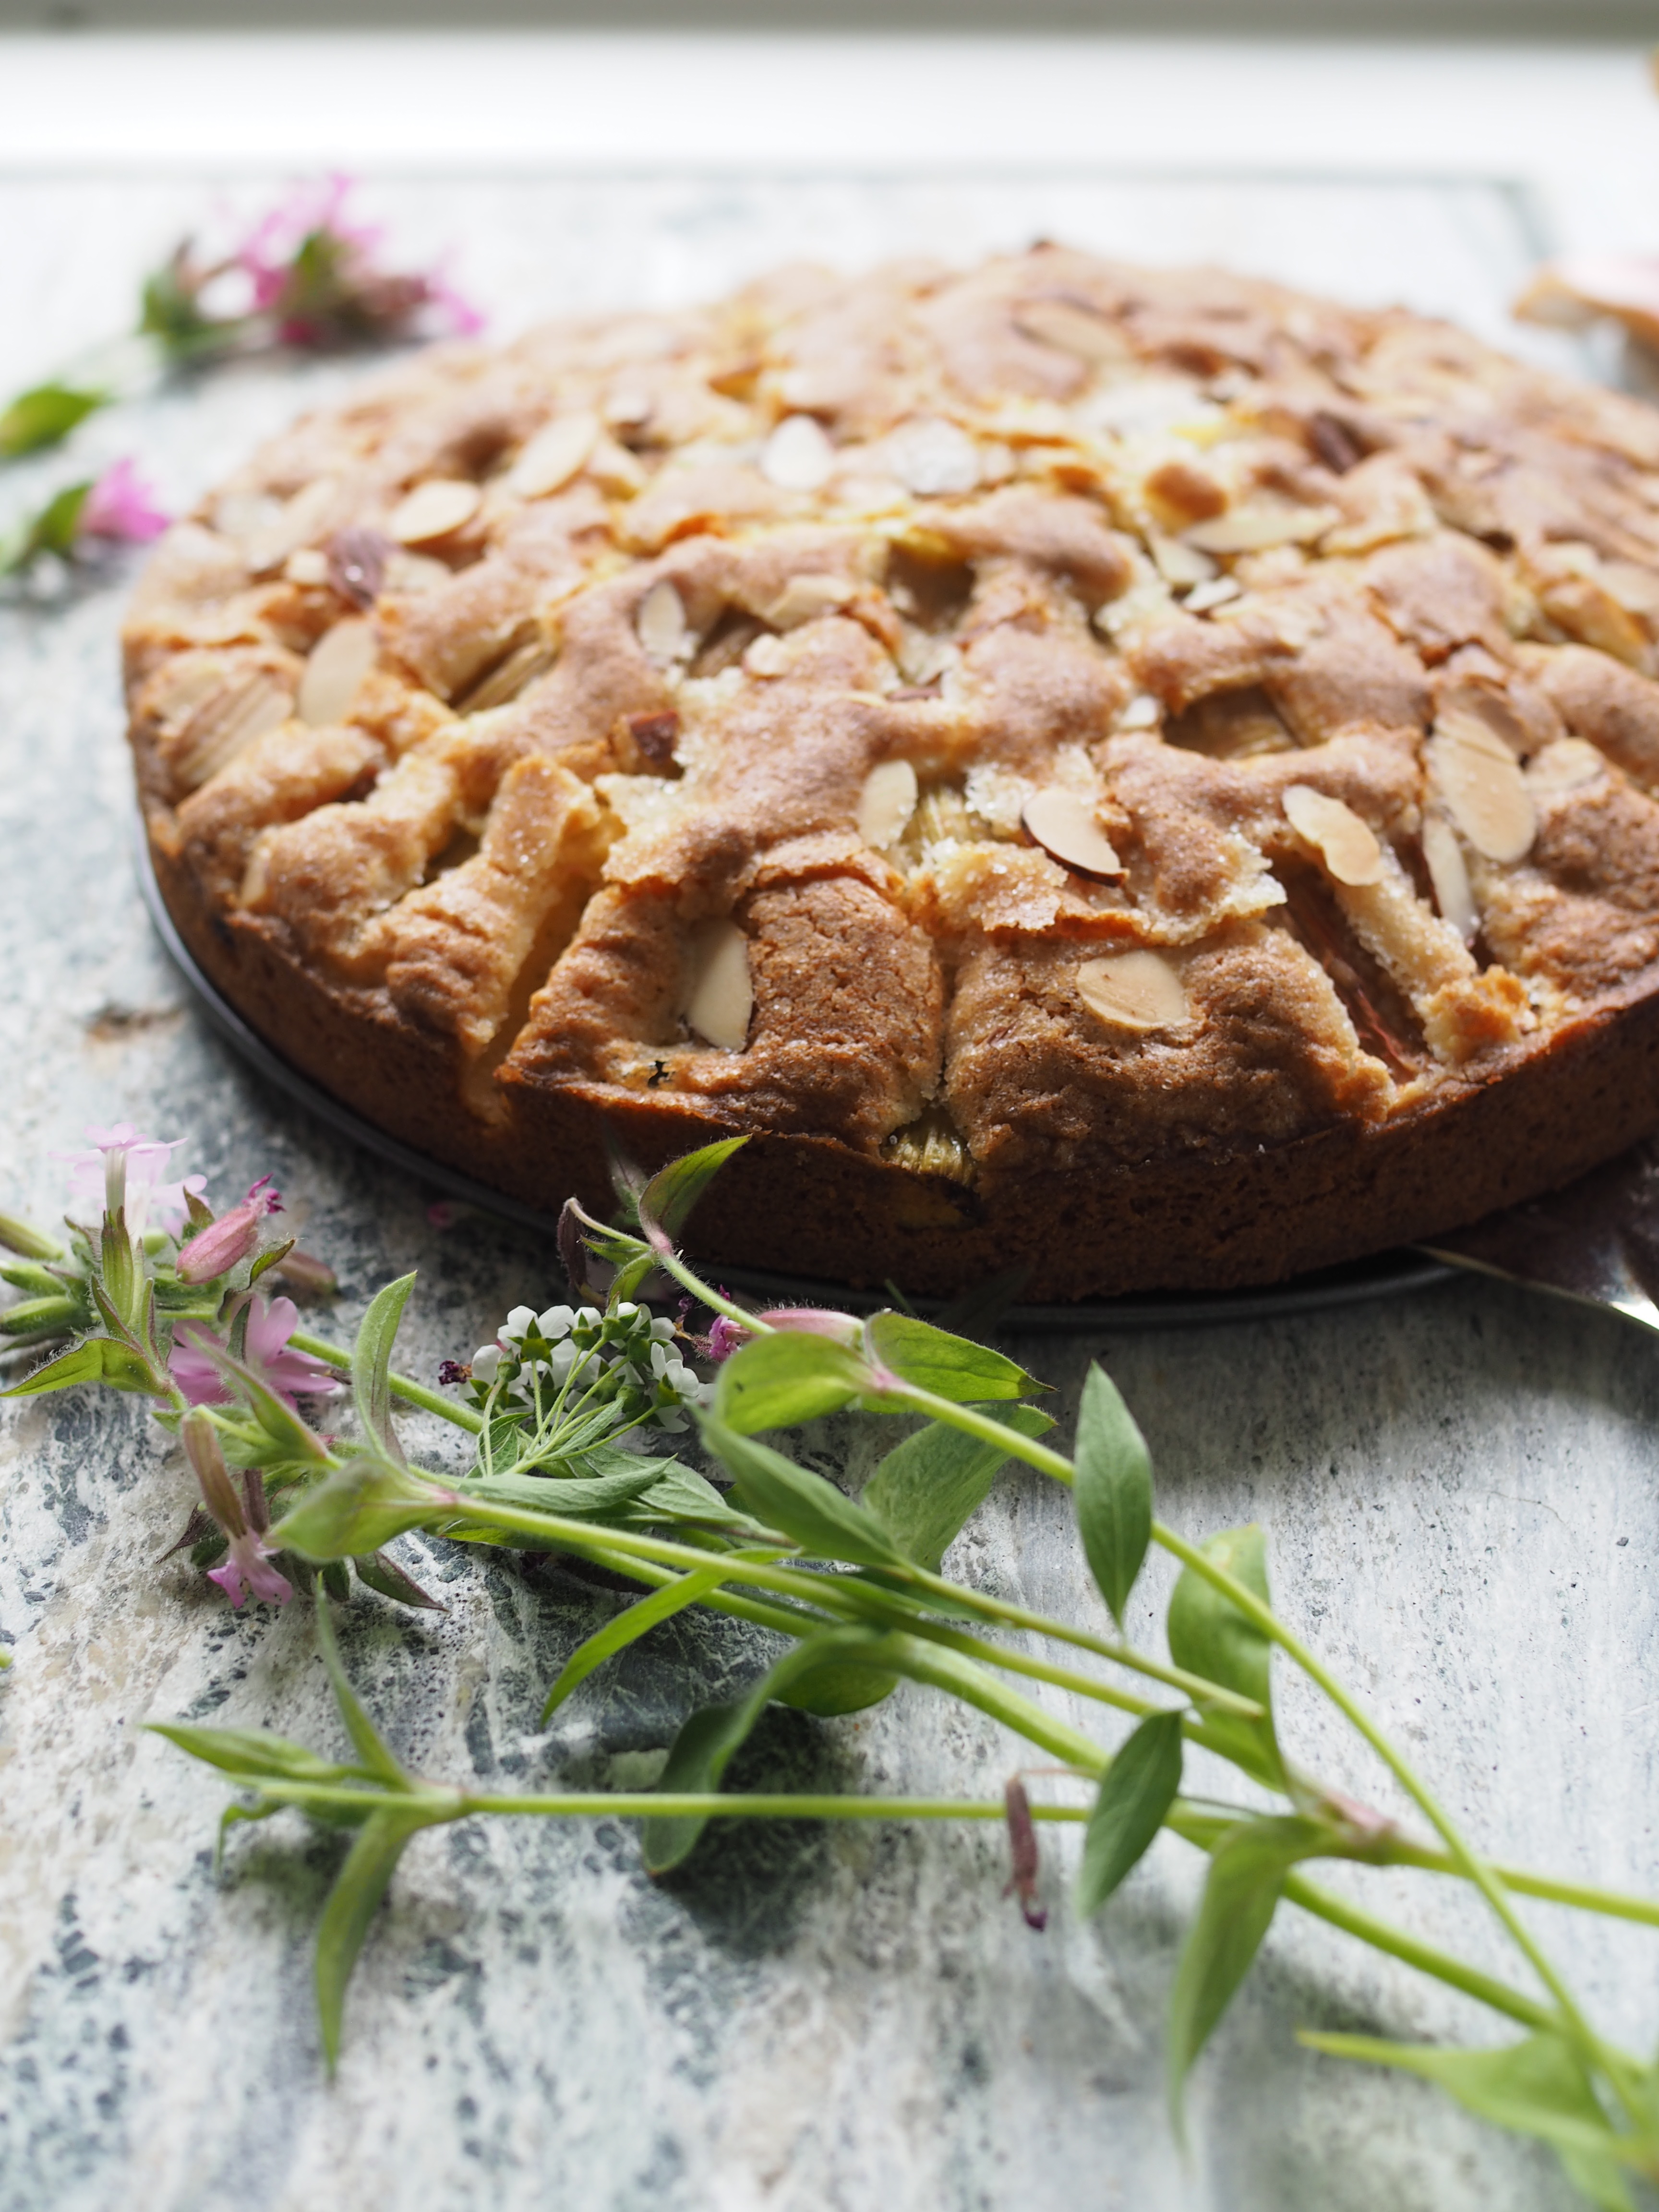 Simple Norwegian Rhubarb Cake (Rabarbrakake)